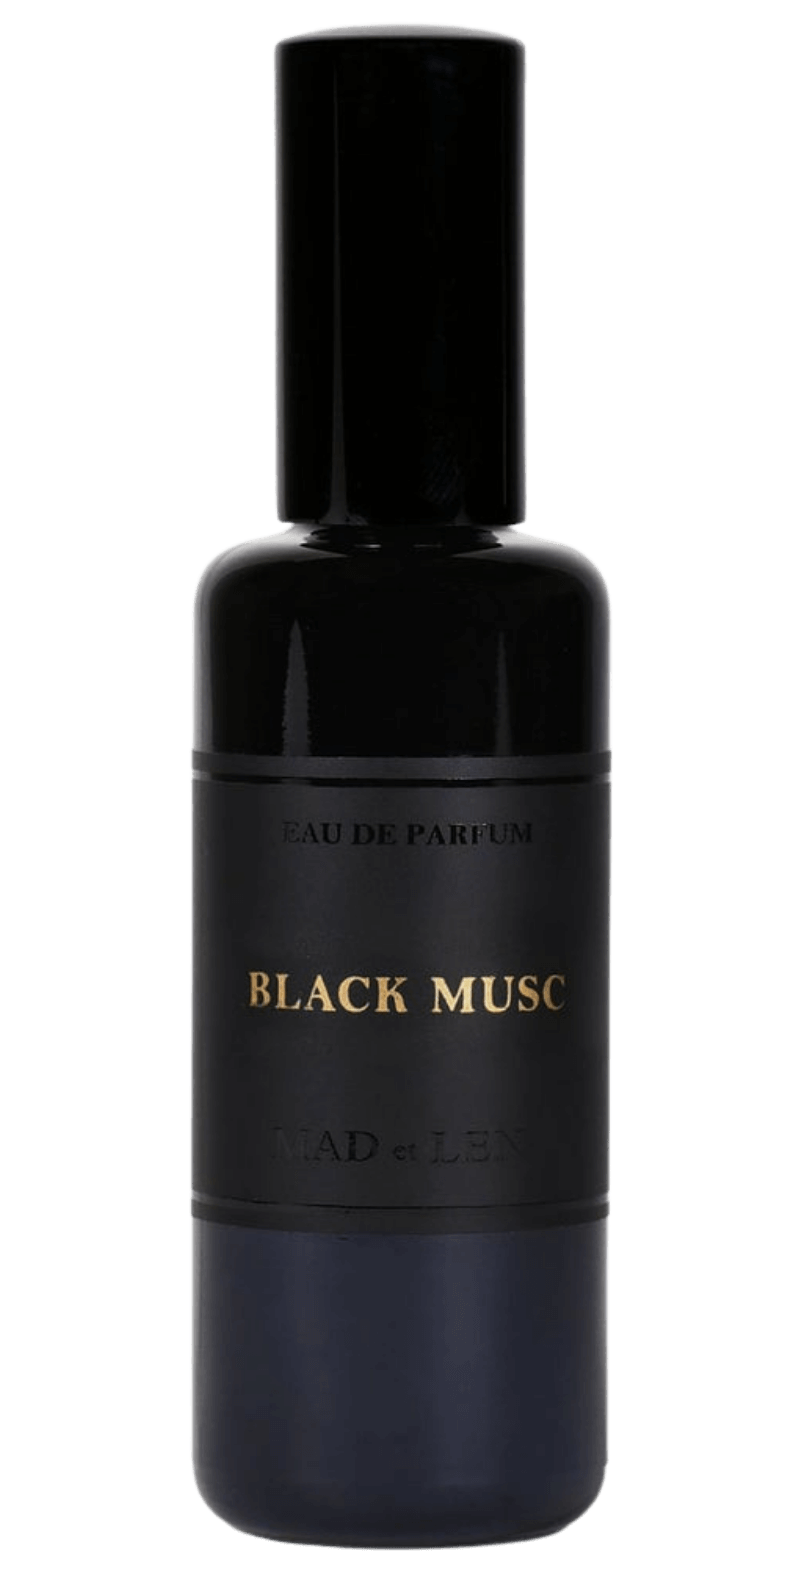 's Mad et Len Black Musk Eau de Parfum - Bellini's Skin and Parfumerie 